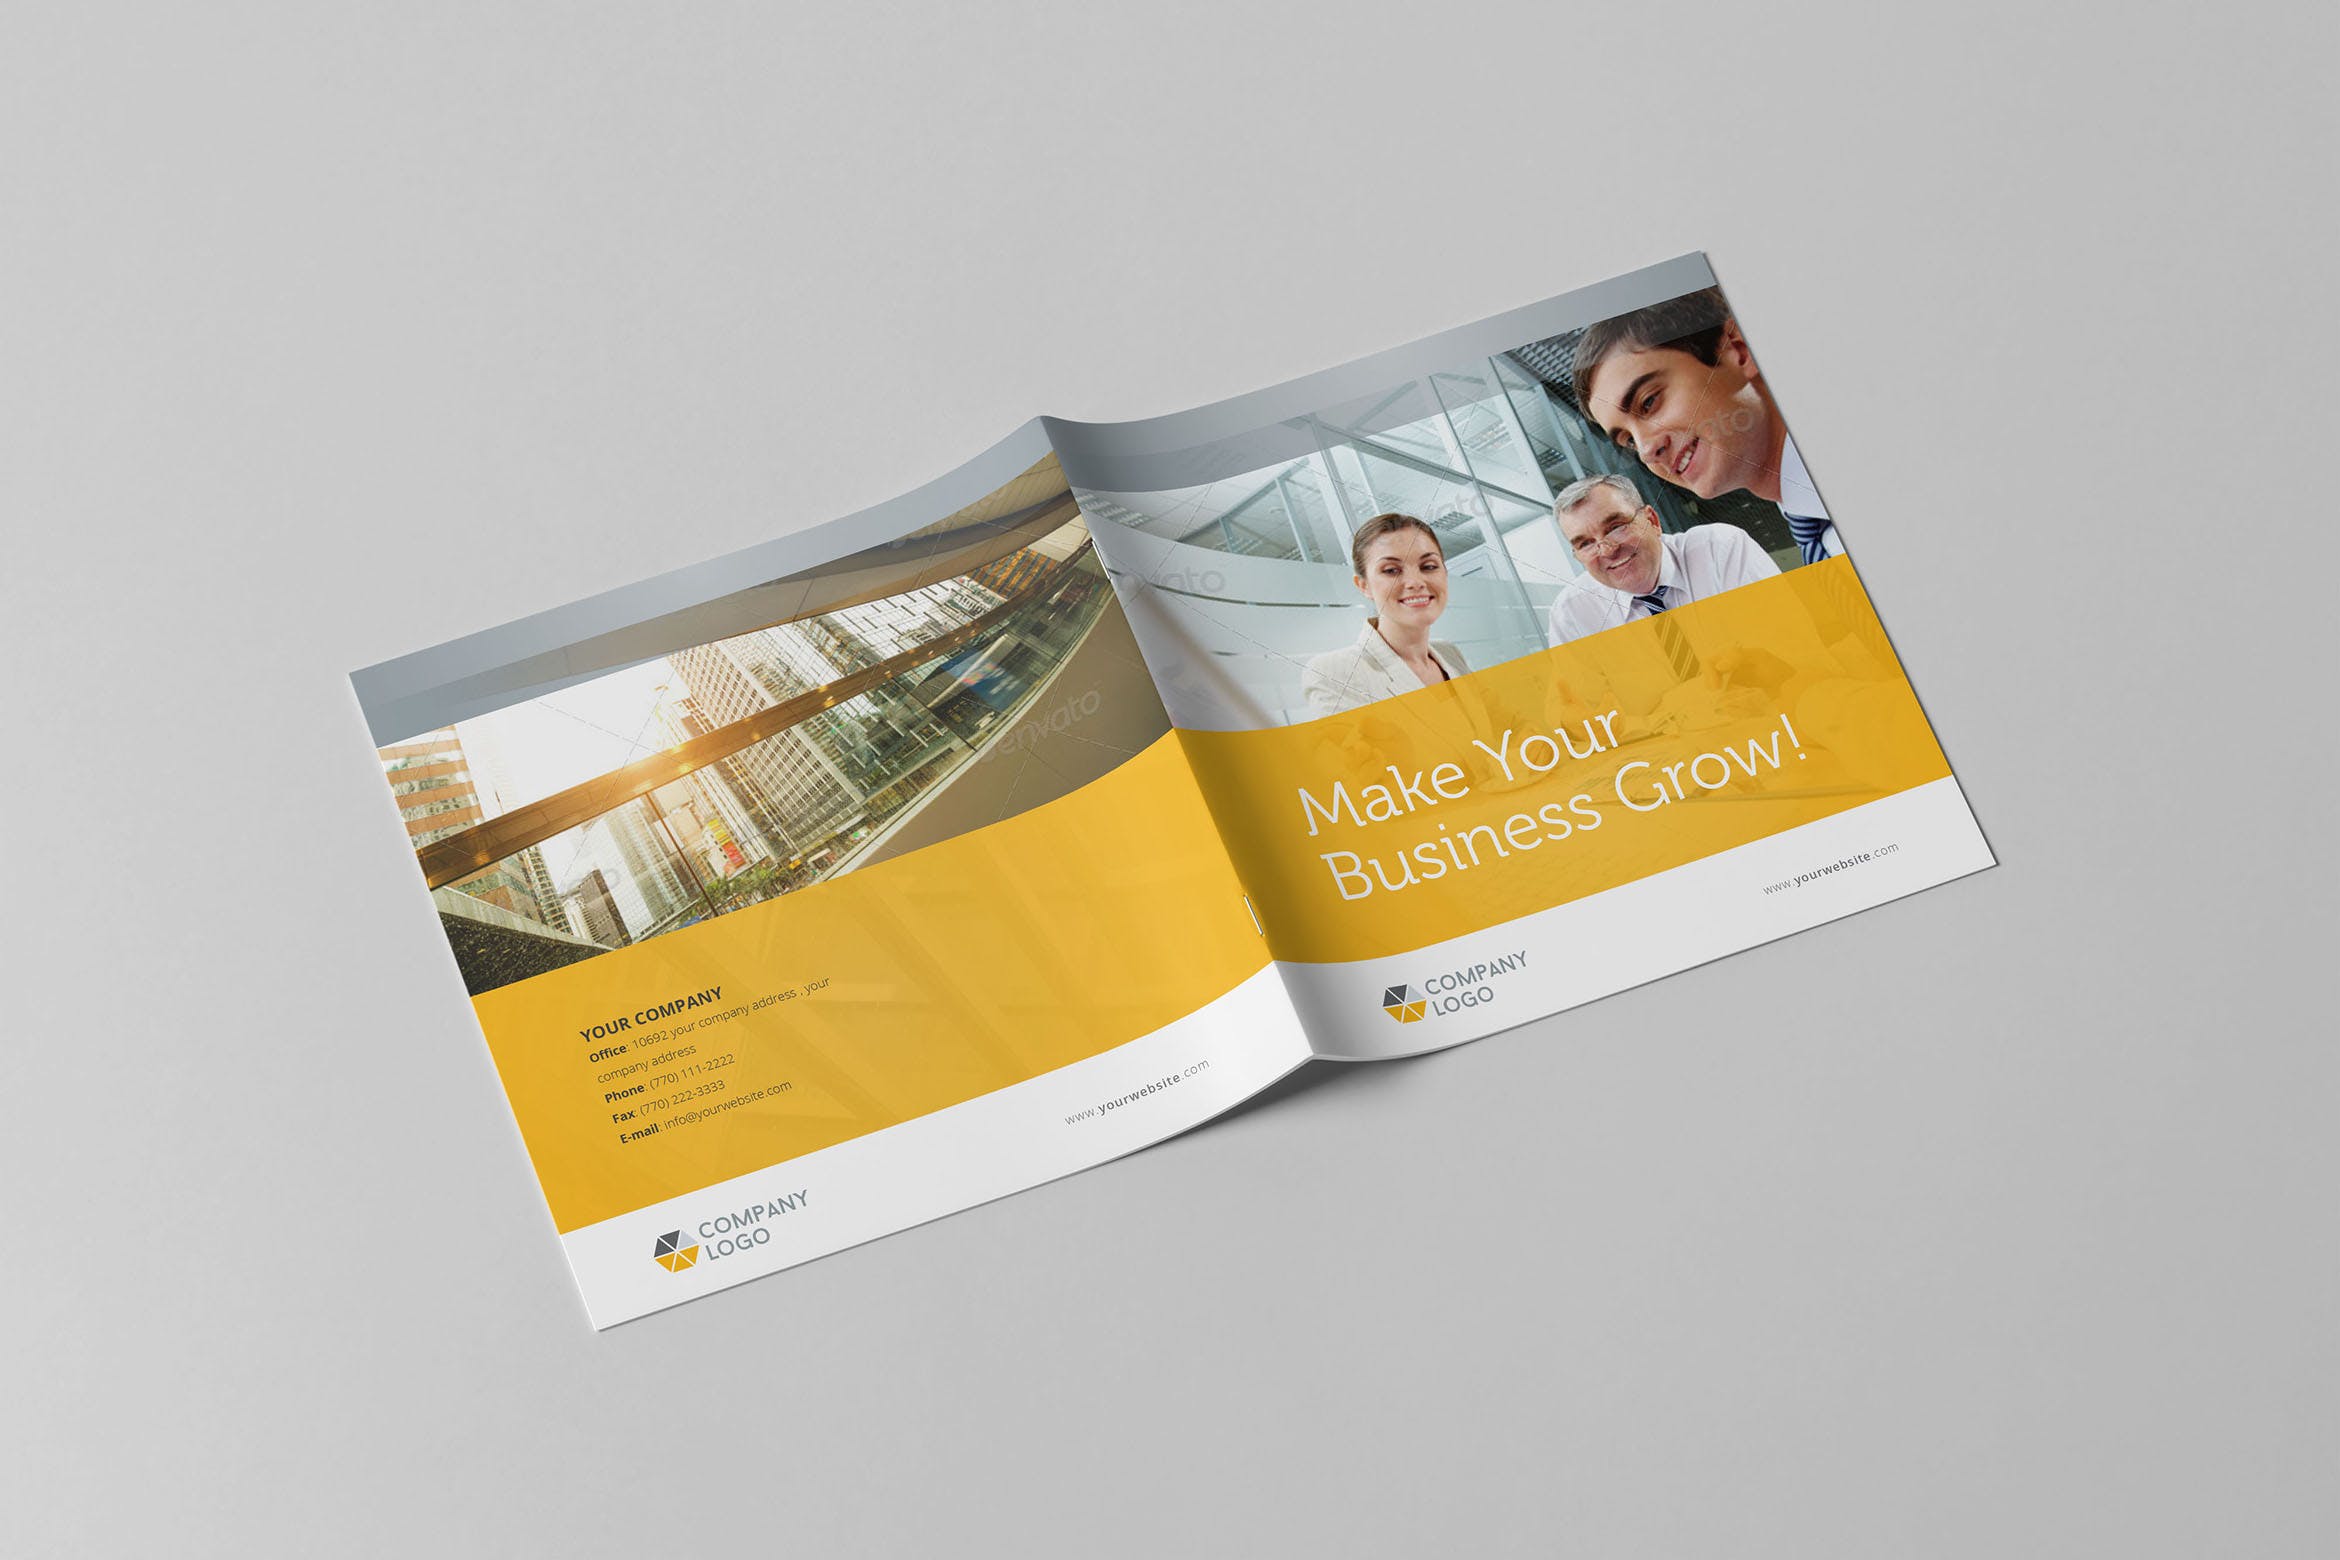 简约设计风格企业宣传画册设计模板素材 Clean Business Square Brochure插图